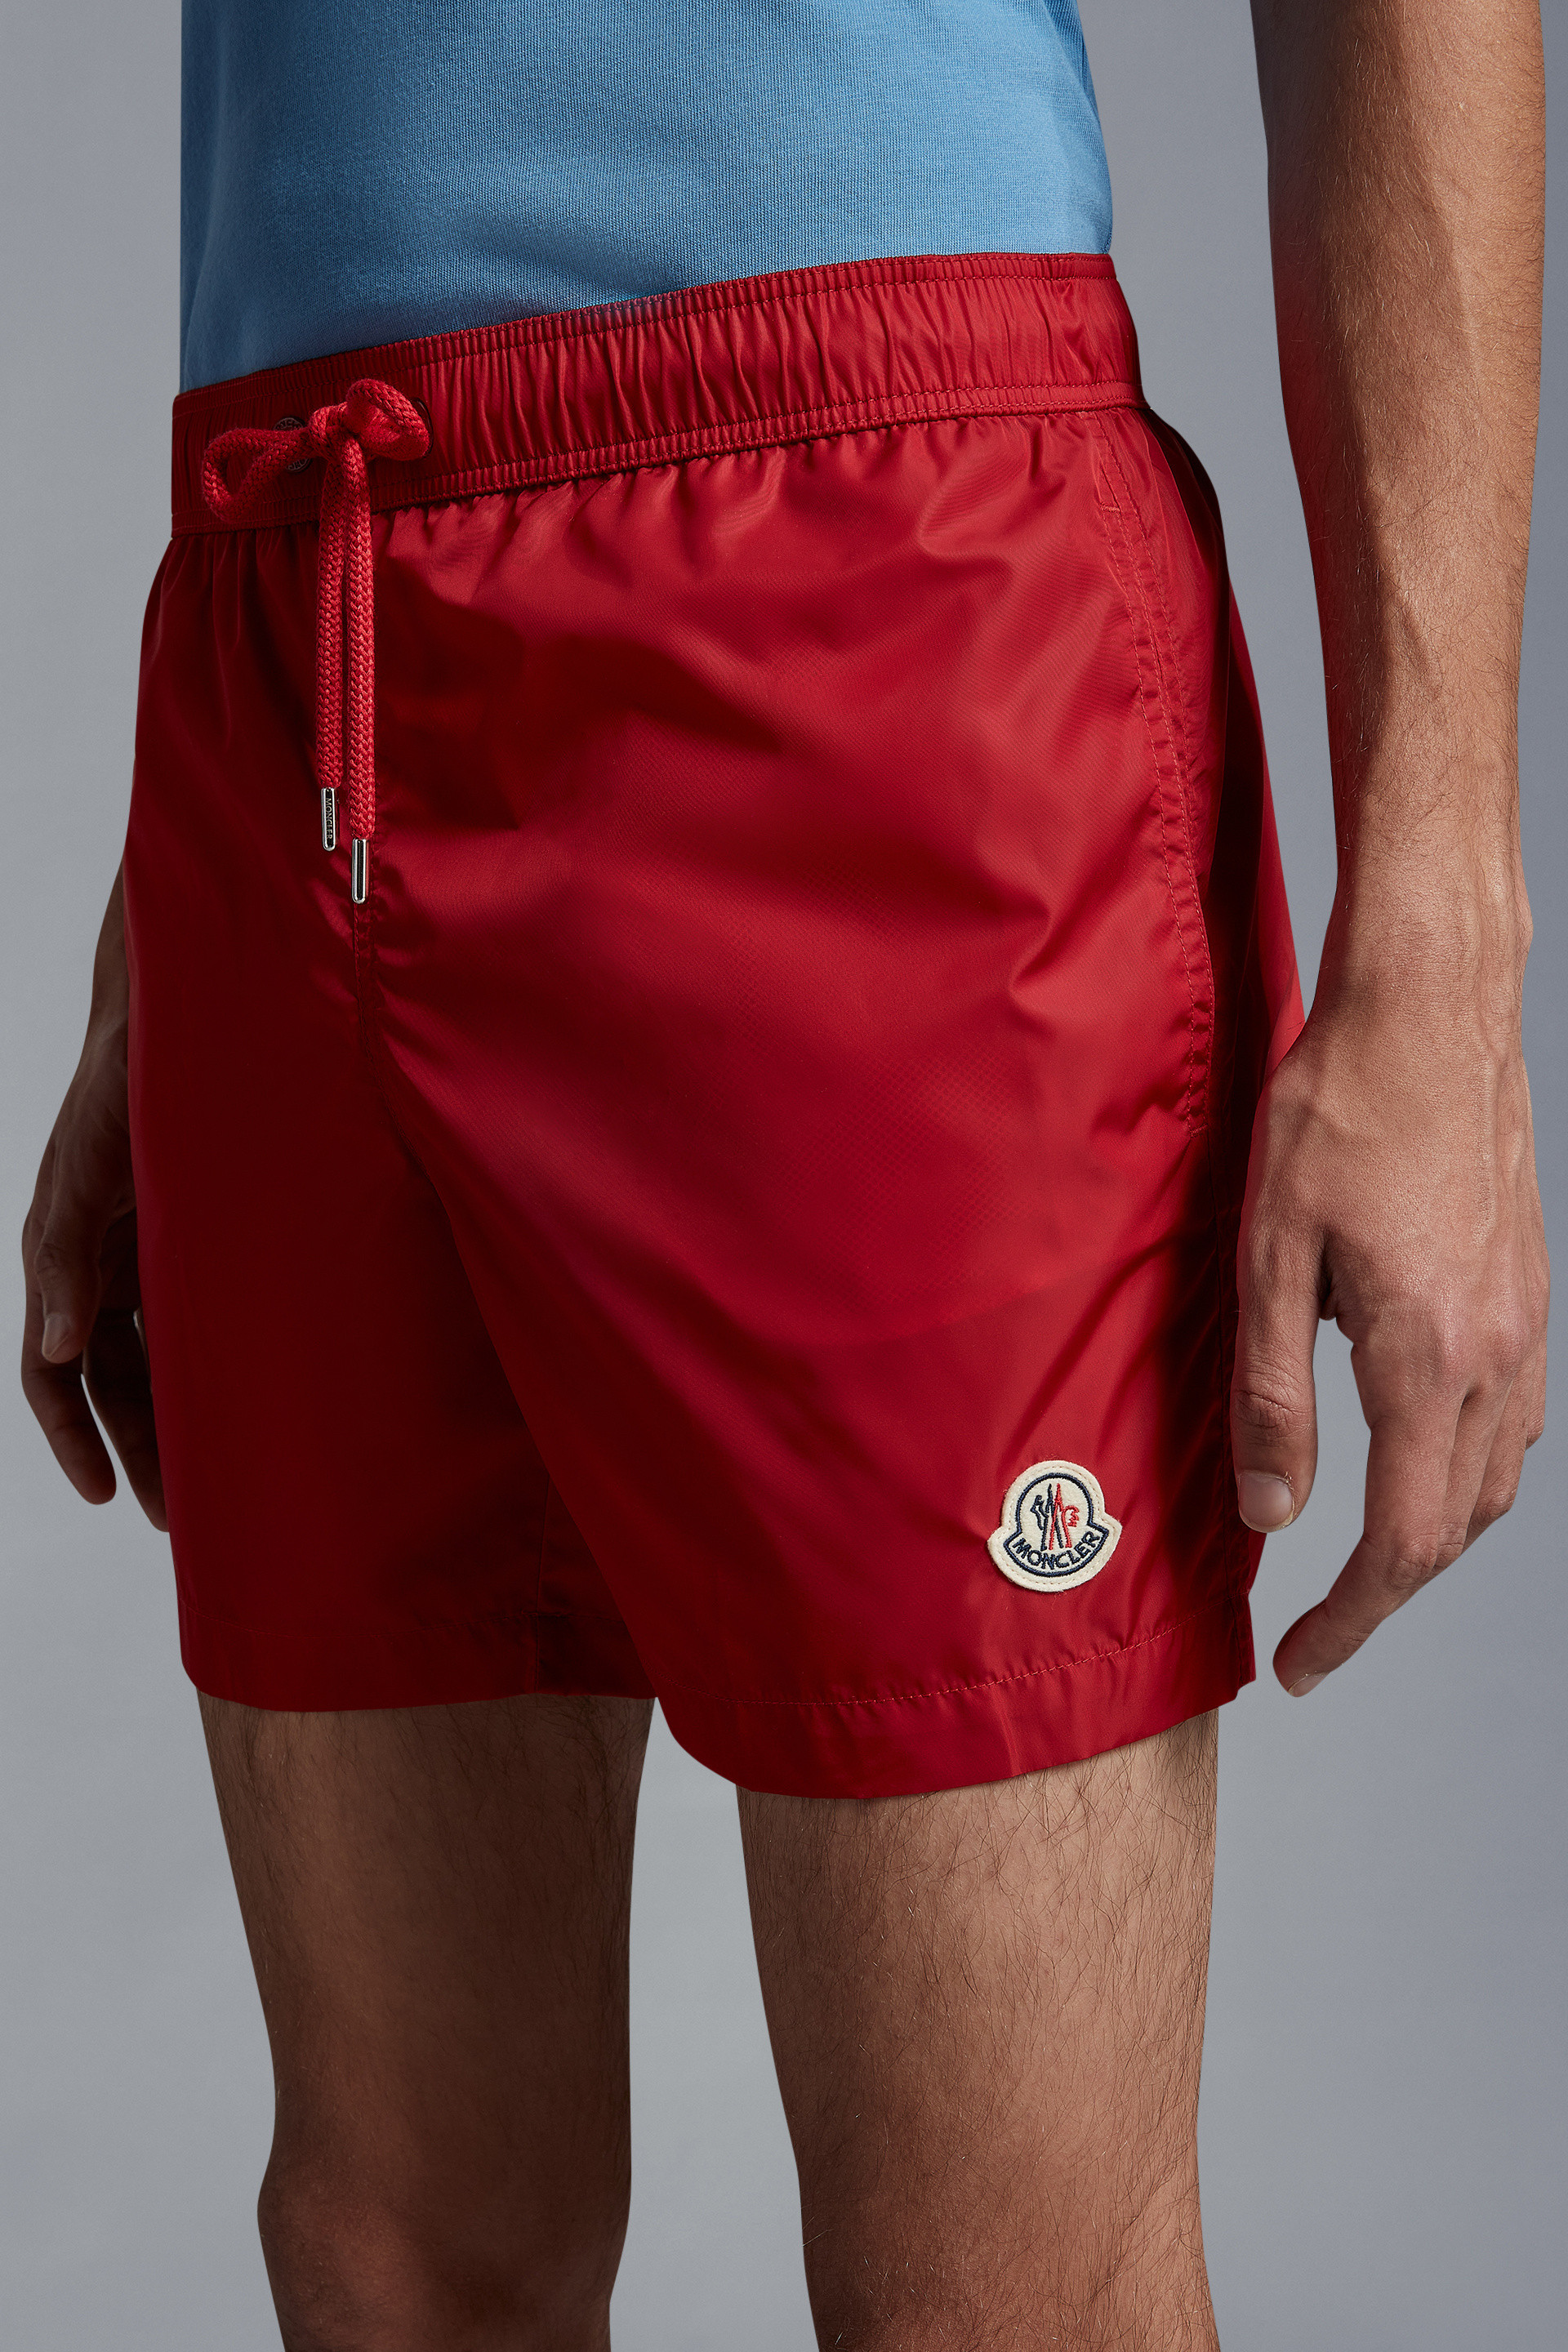 Swimwear for Men - Swimming Trunks Shorts | Moncler US